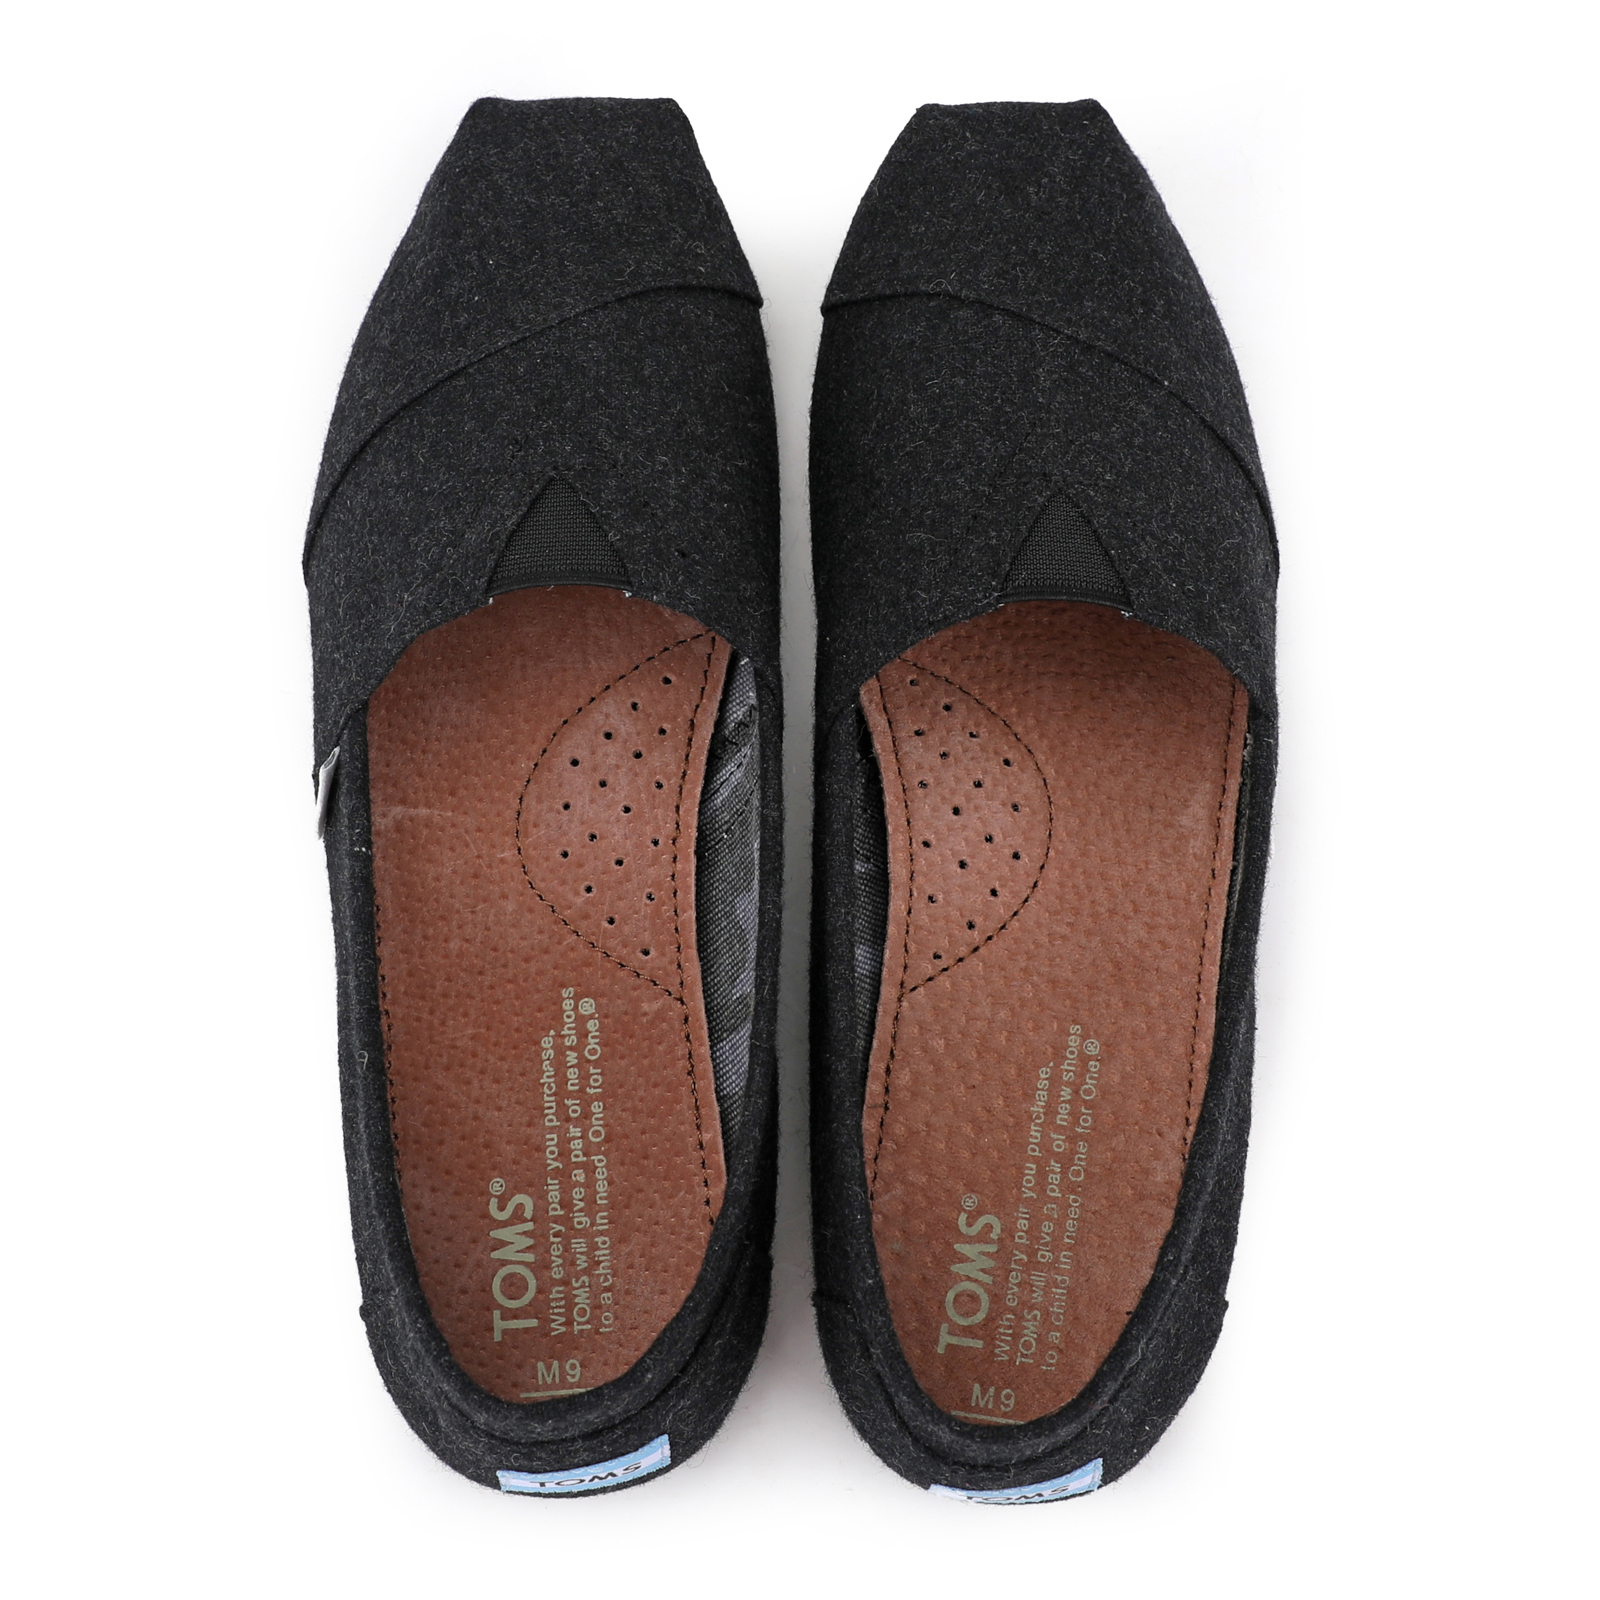 Toms香港新款黑色法蘭絨男鞋 - 點擊圖片關閉